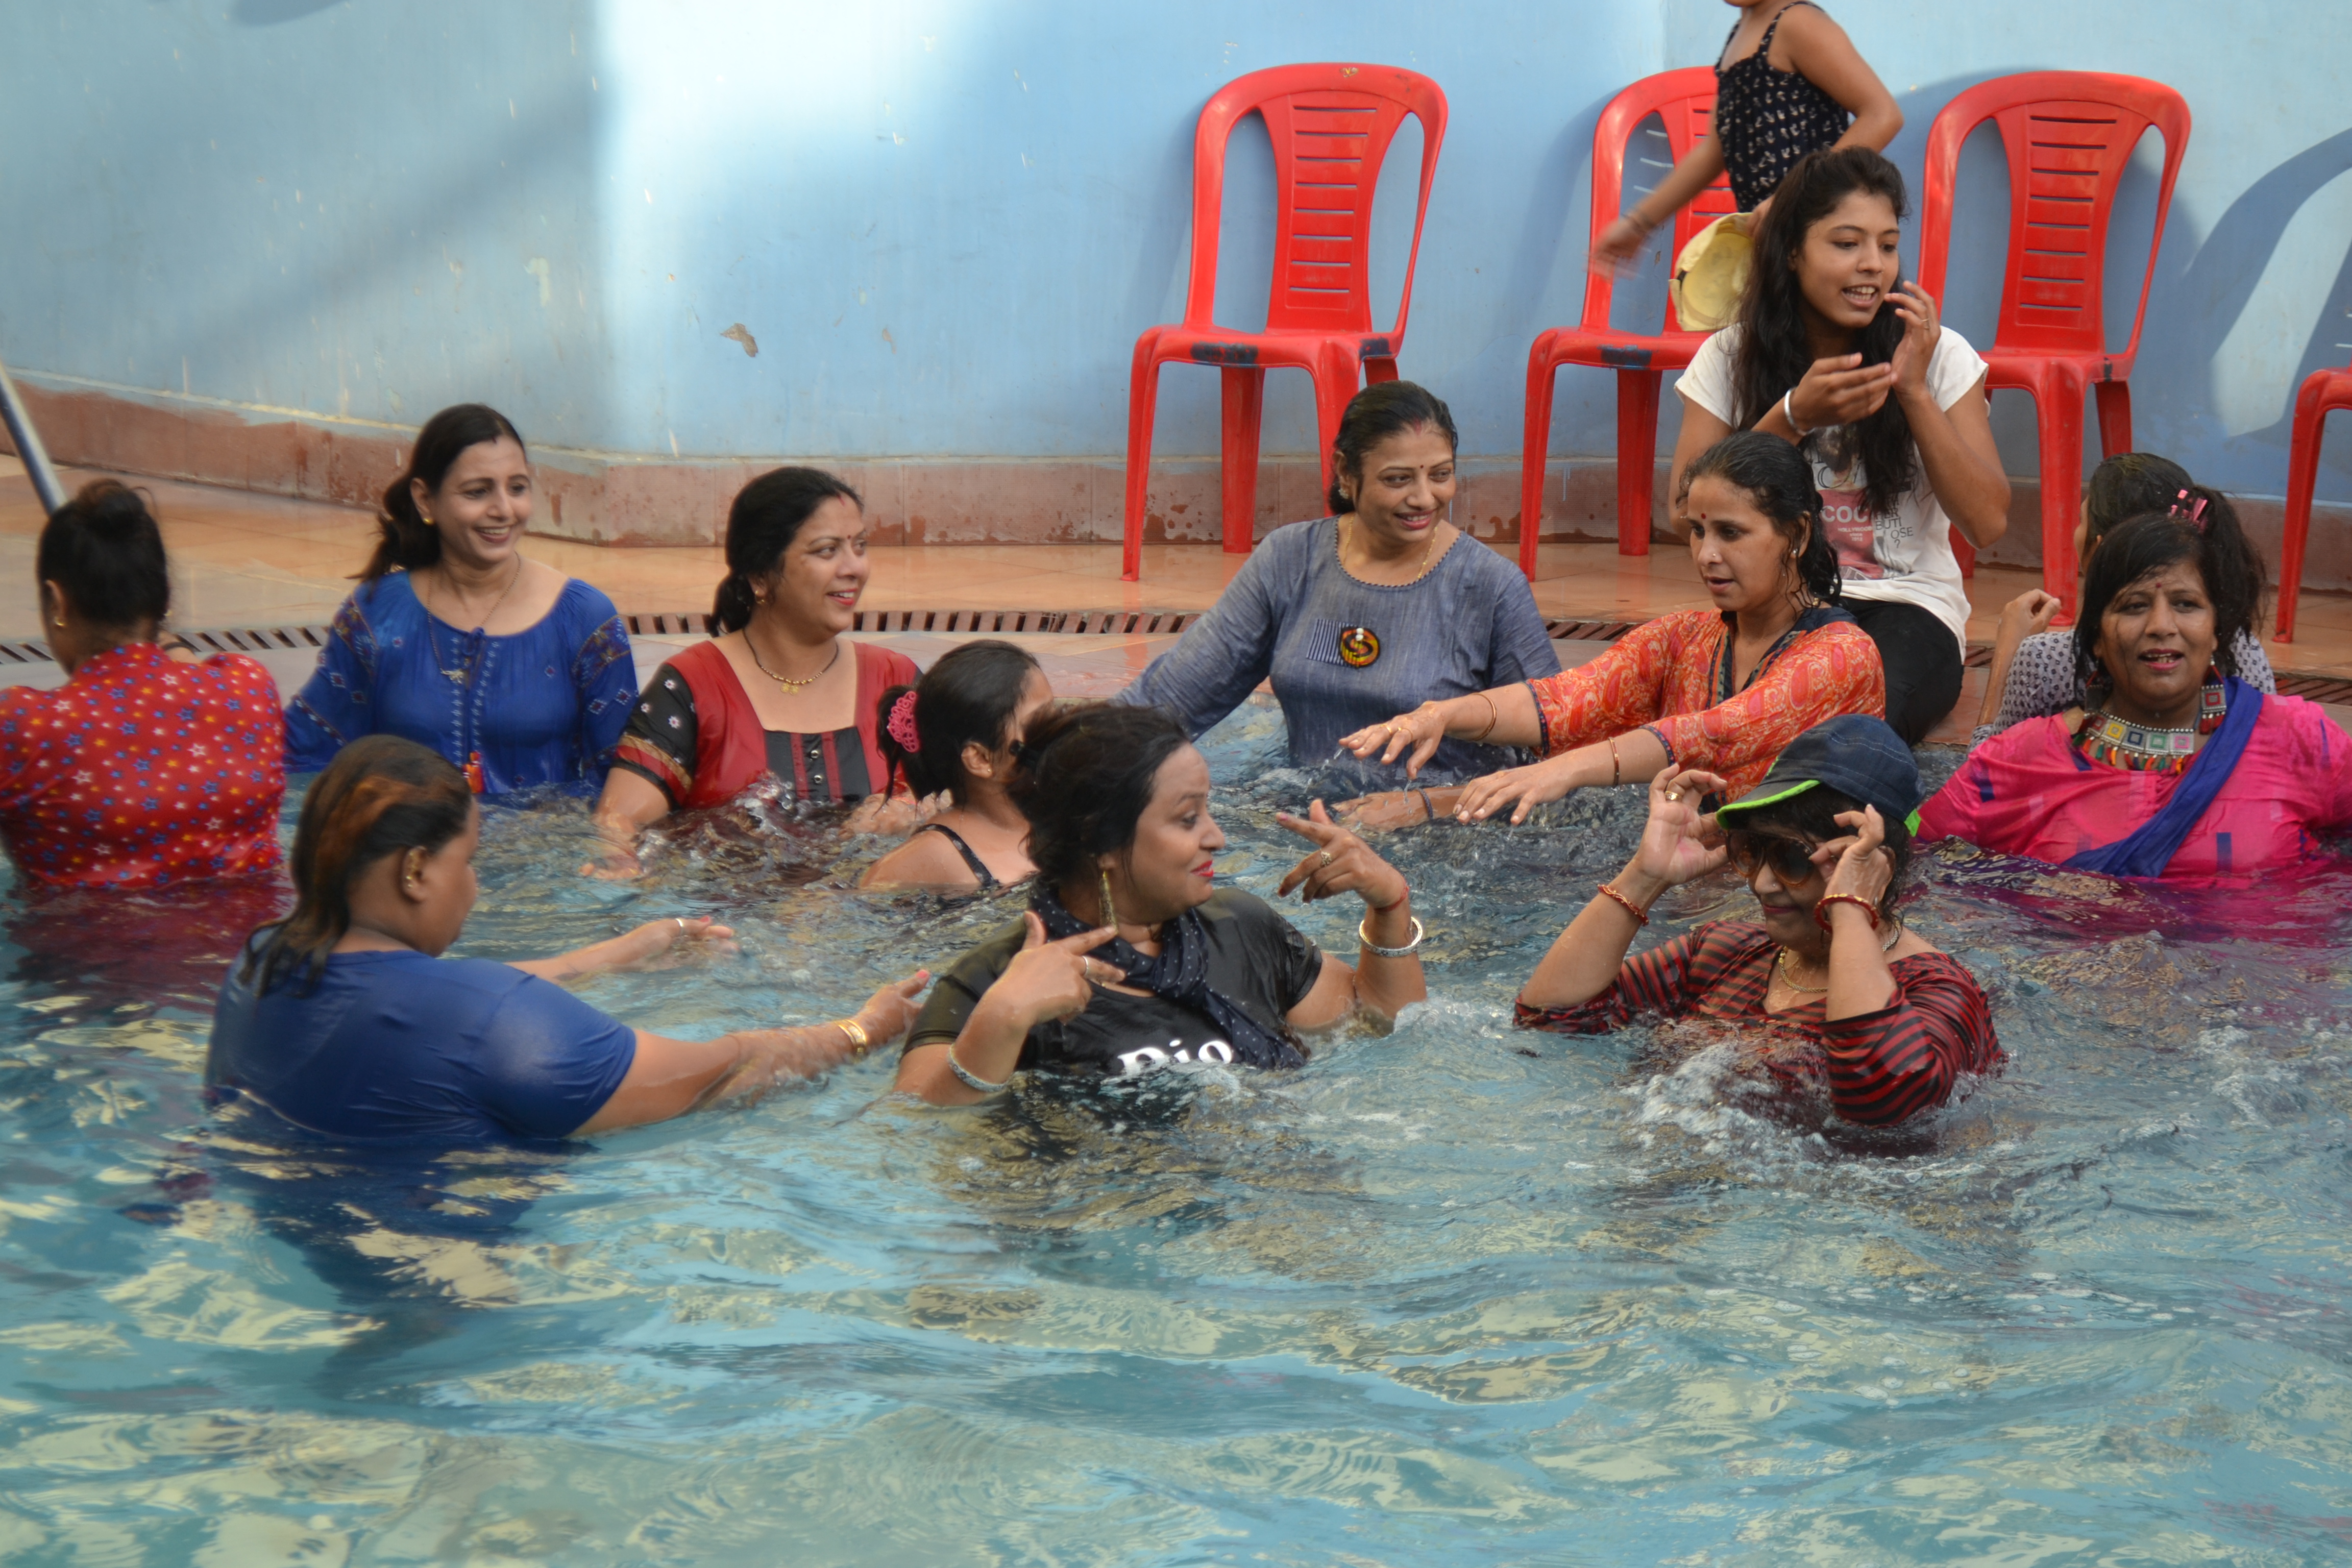 Pool Party's Sudarshan Club organized